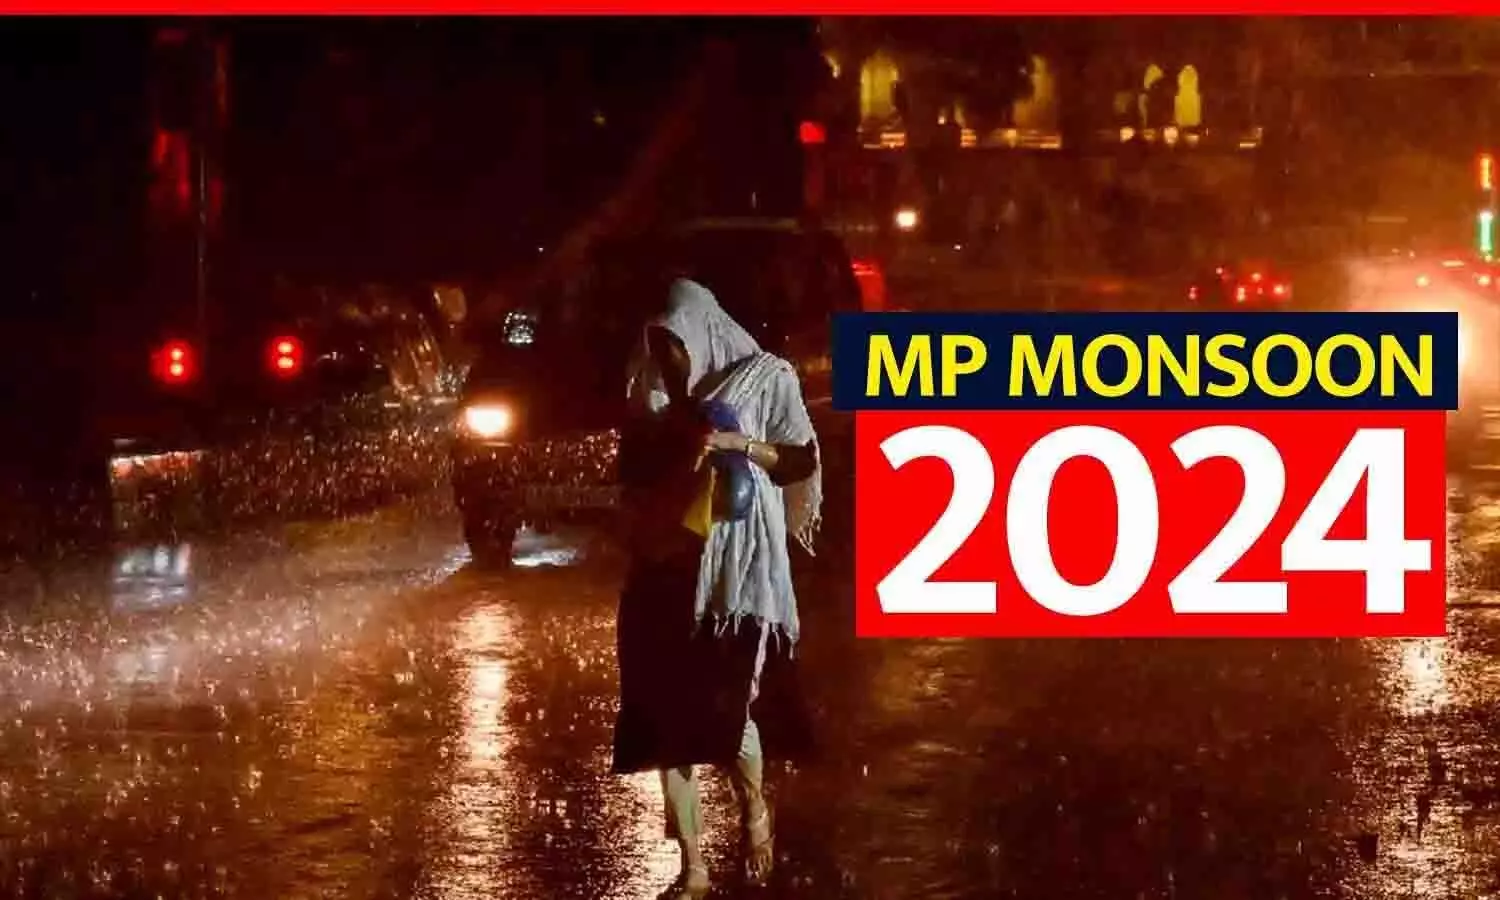 MP MONSOON 2024: मध्य प्रदेश में बारिश-आंधी का तूफान! रीवा-सतना, भोपाल-इंदौर में जल्द मानसून की दस्तक...